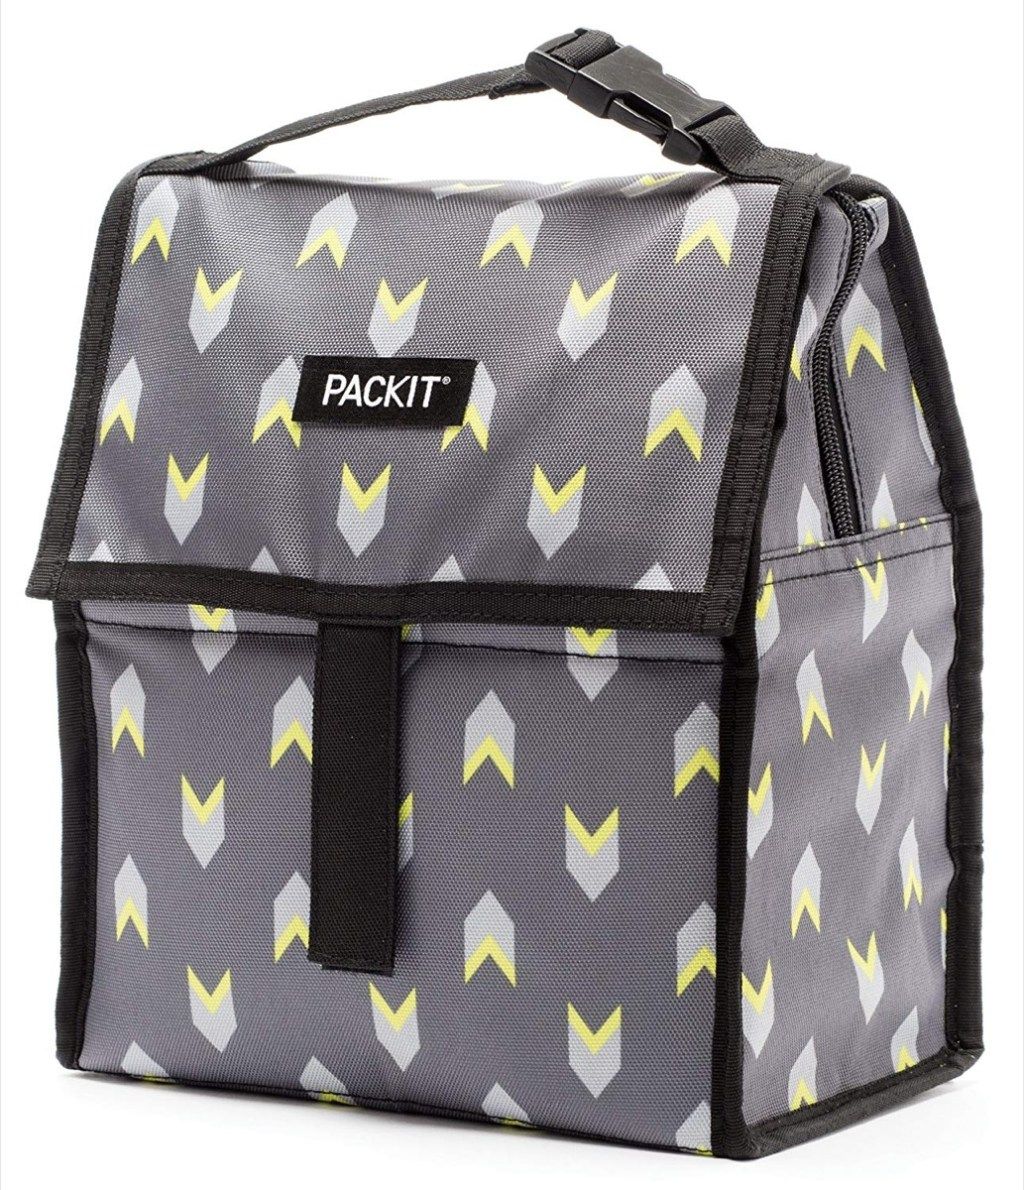 Te brezplačne vrečke PackIt so genialne - in vse so manjše od 30 USD